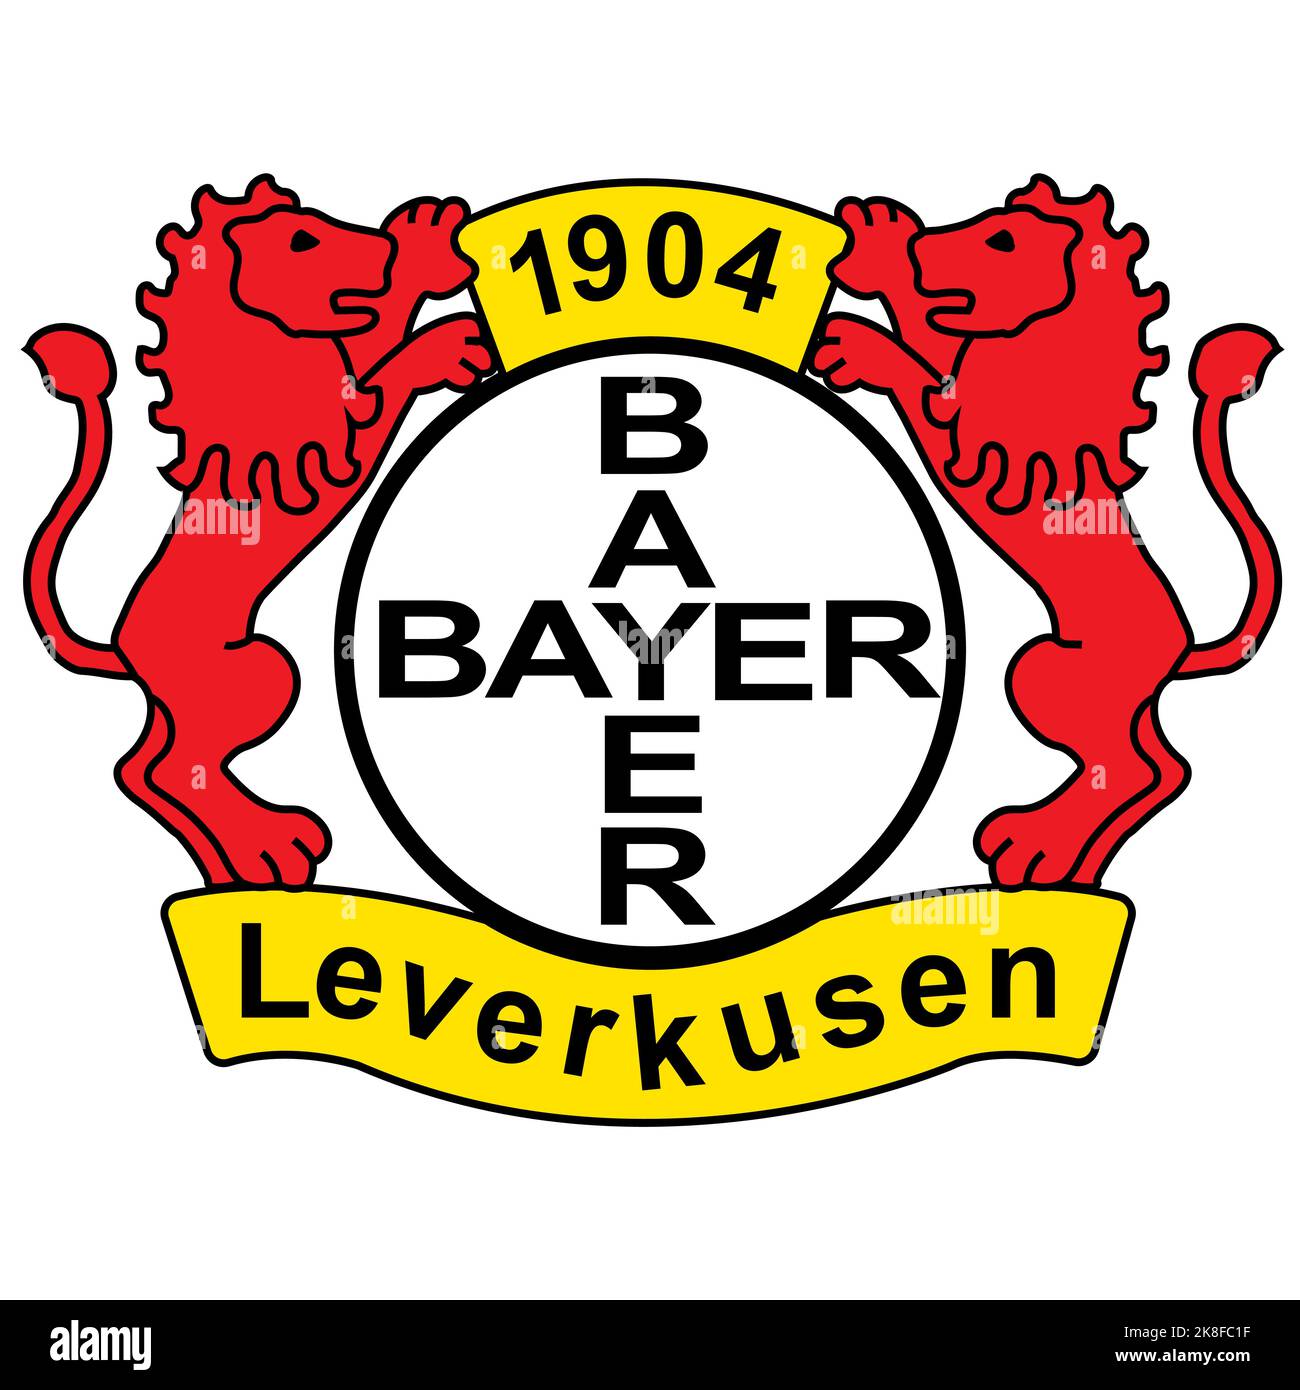 Francoforte sul meno, Germania - 10.23.2022 Logo della società calcistica tedesca Bayer 04. Immagine vettoriale Illustrazione Vettoriale